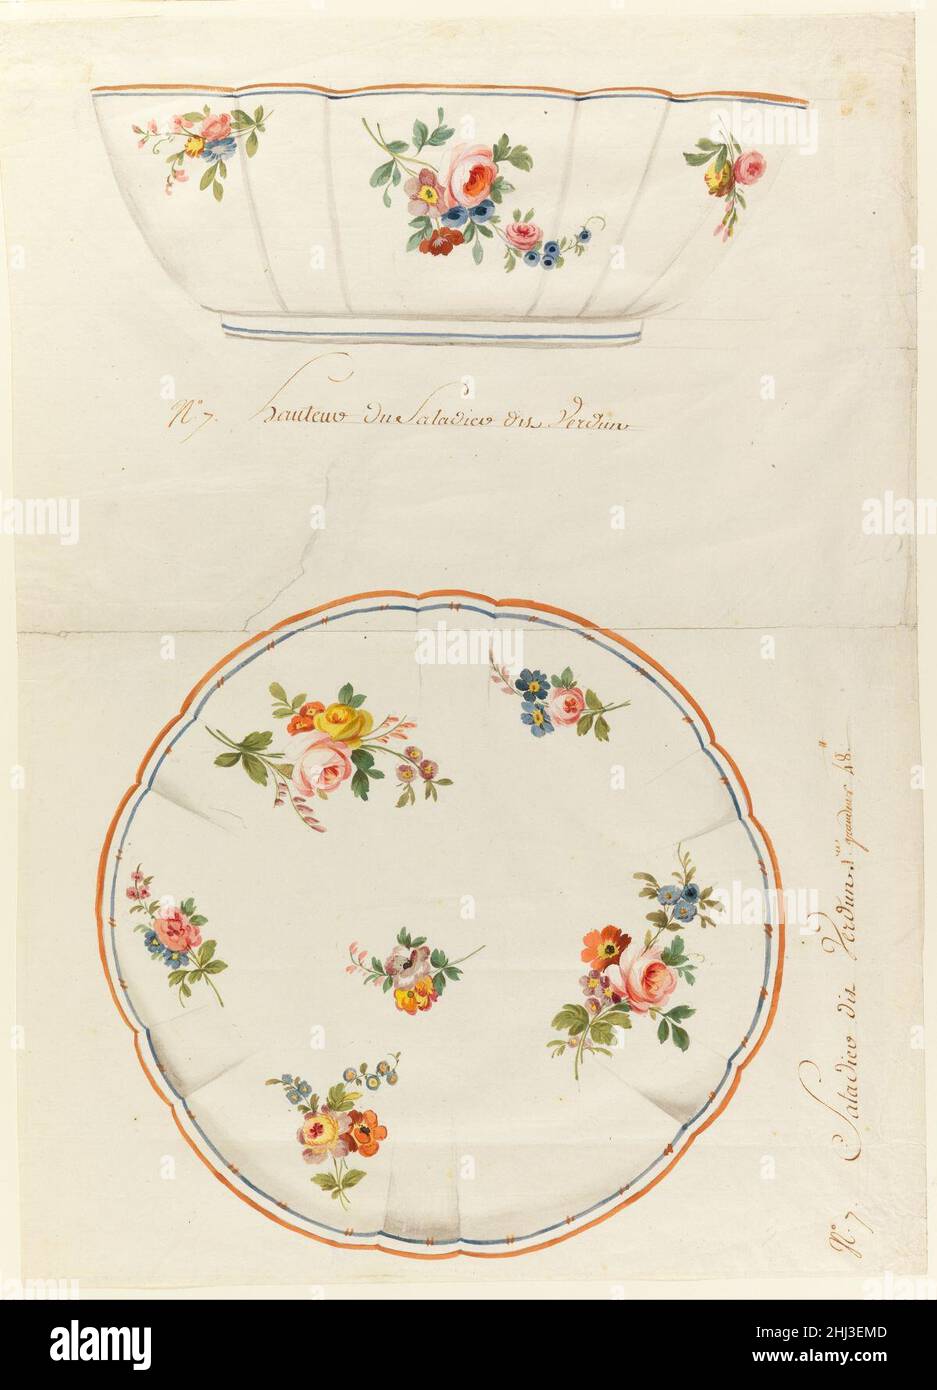 Sèvres Porcelain Manufactory - Design for a Painted Porcelain Scalloped Salad Bowl, for Sèvres Porcelain Manufactury Stock Photo